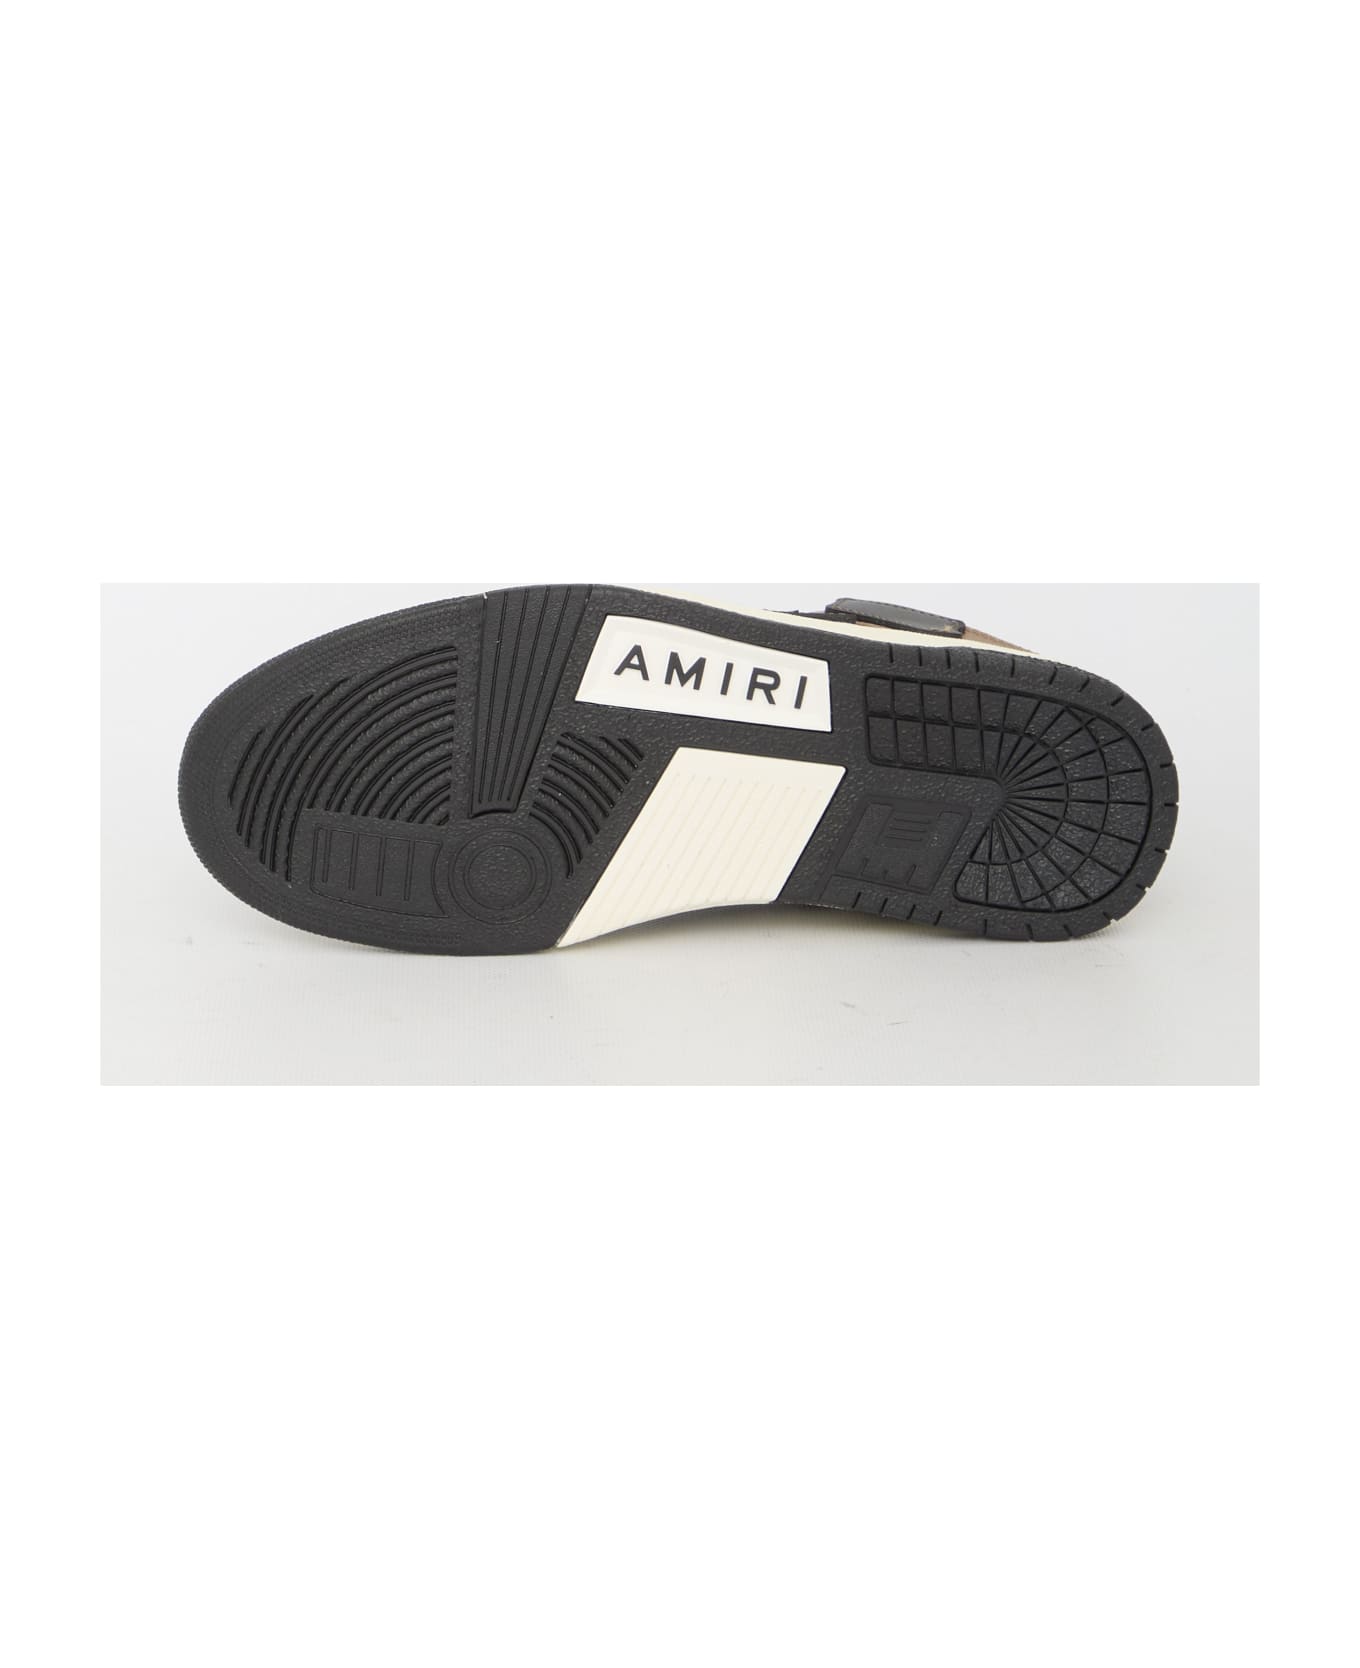 AMIRI Skel Top Low Sneakers - BLACK